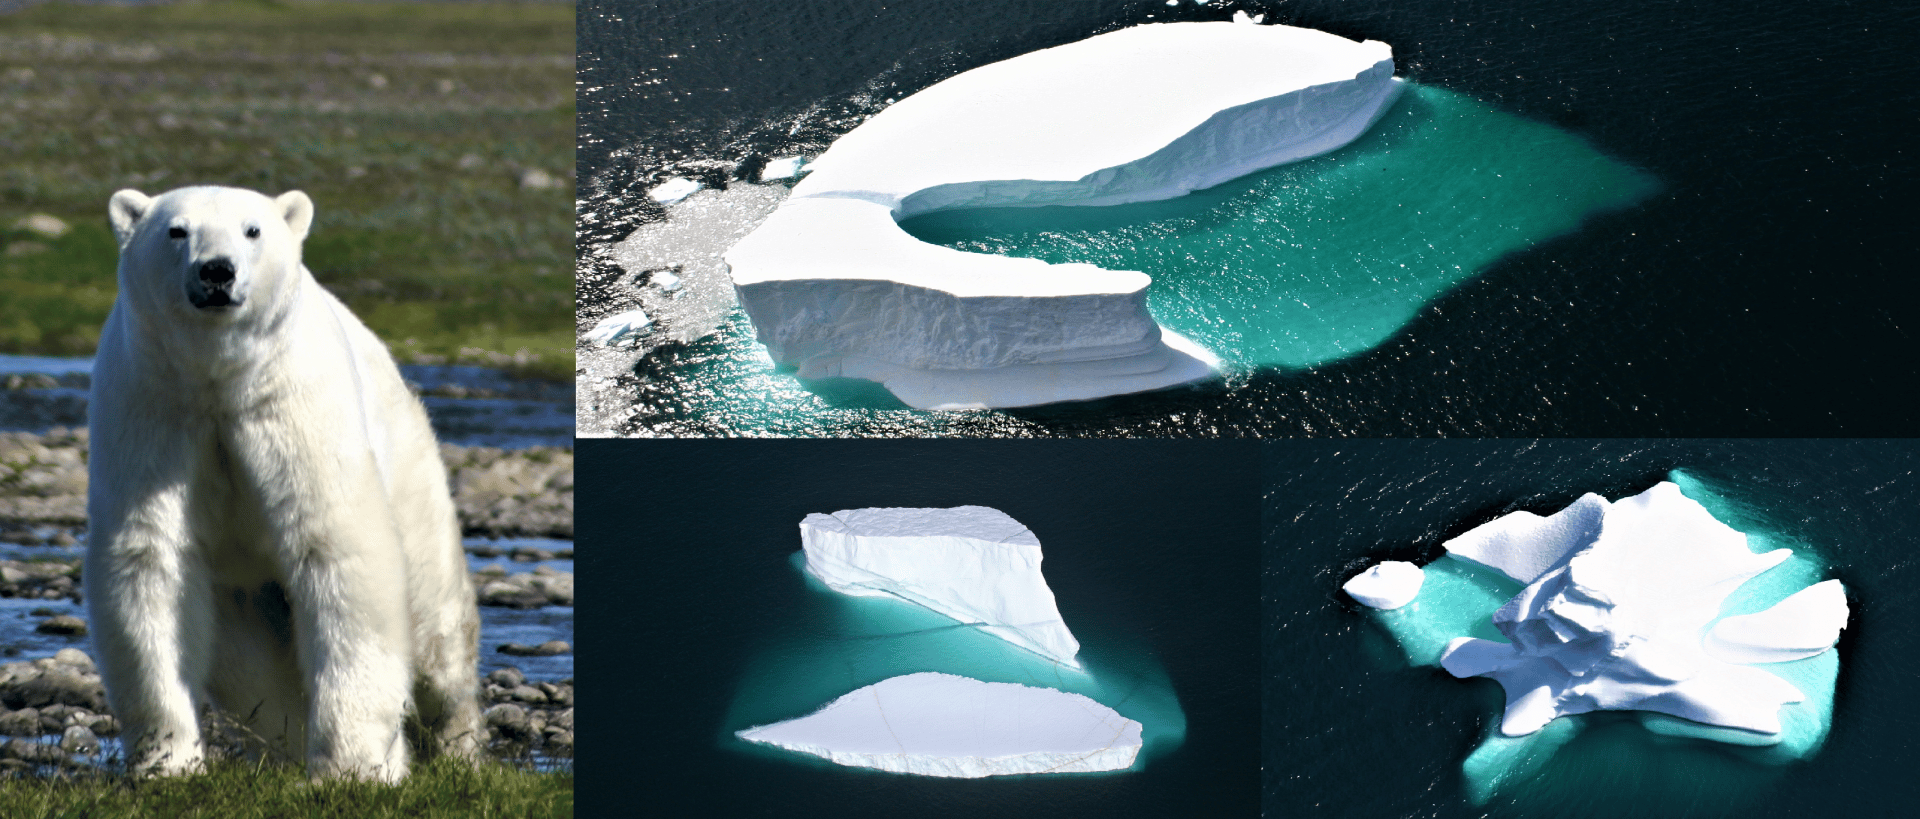 Polar Bears and Icebergs Photo Safari in Labrador